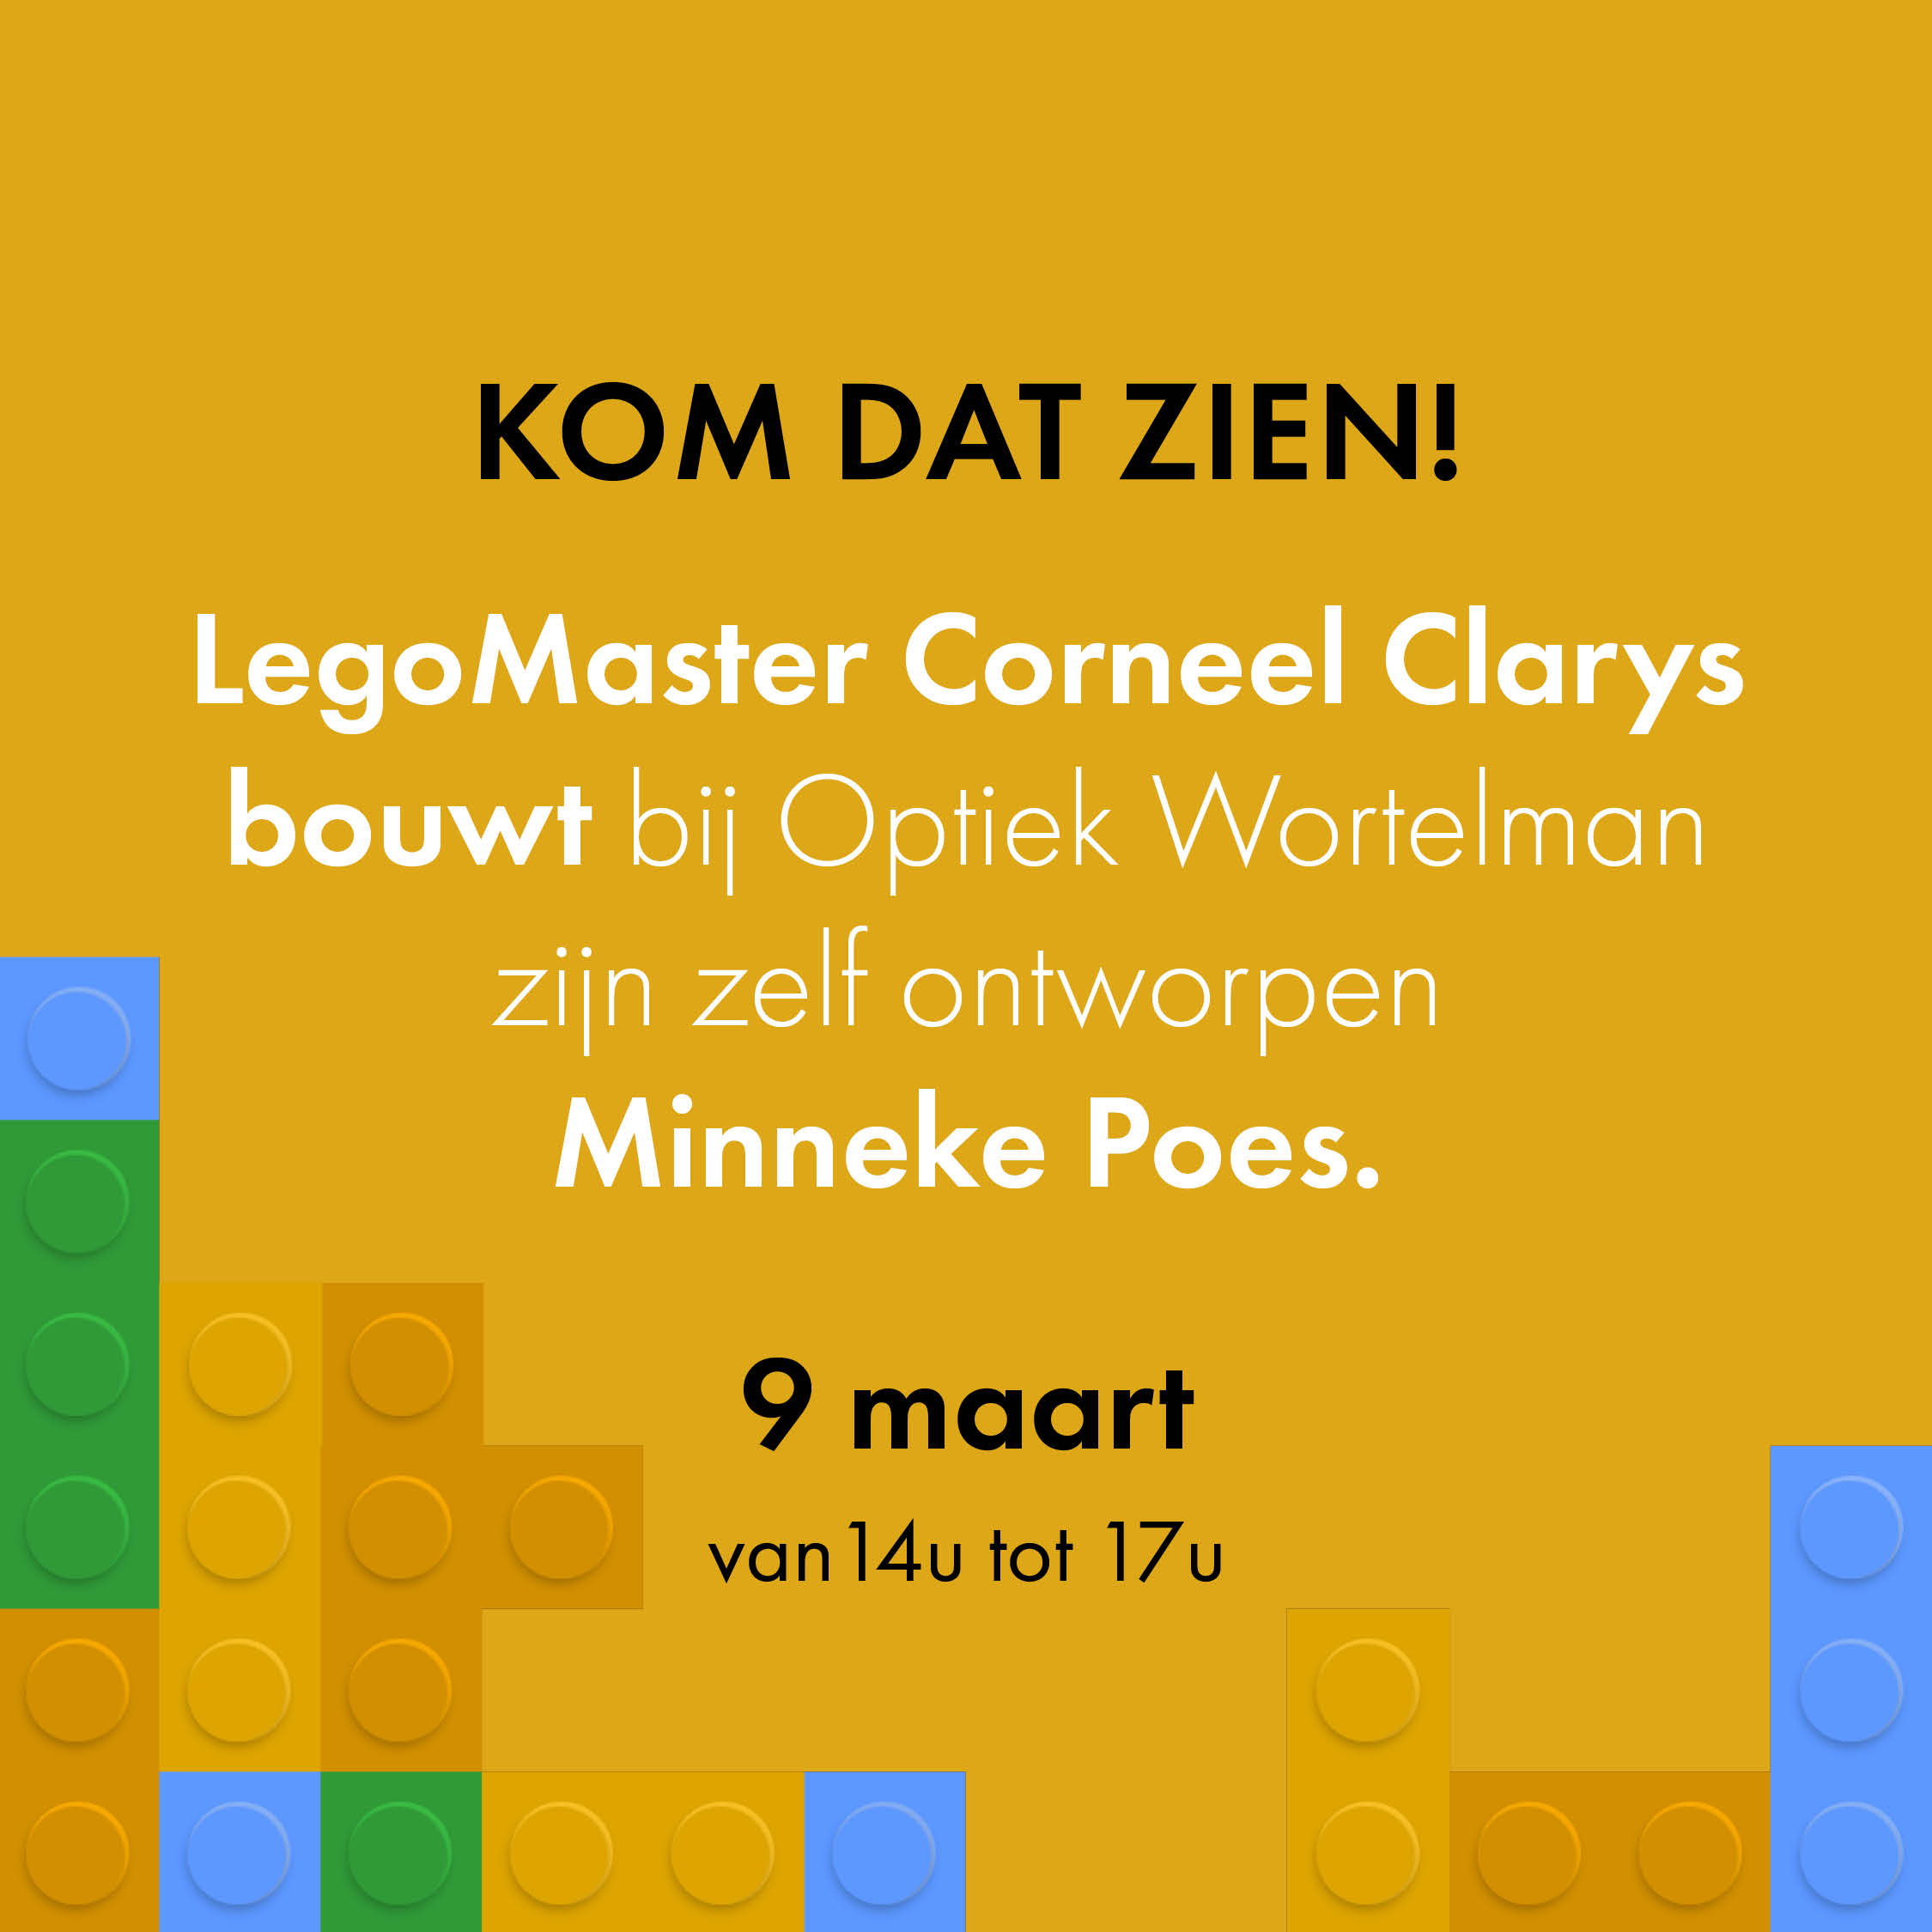 Kom dat zien! LegoMaster Corneel Clarys bouwt bij Optiek Wortelman